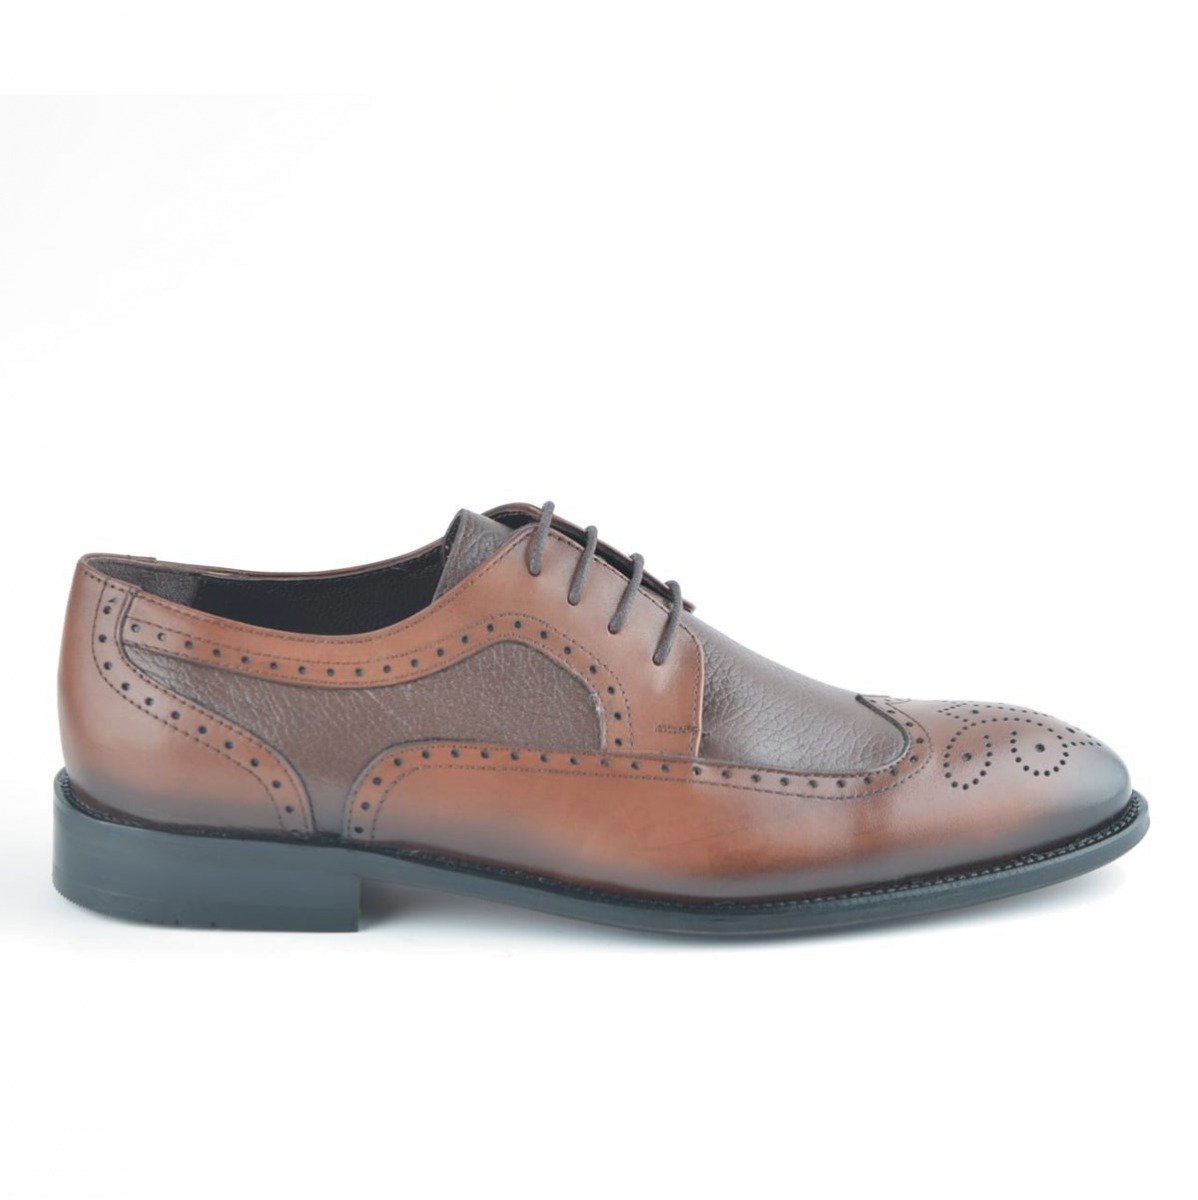 Flo Erkek Deri Klasik Ayakkabı İ20S-191180-4 M 1000 TABA. 1